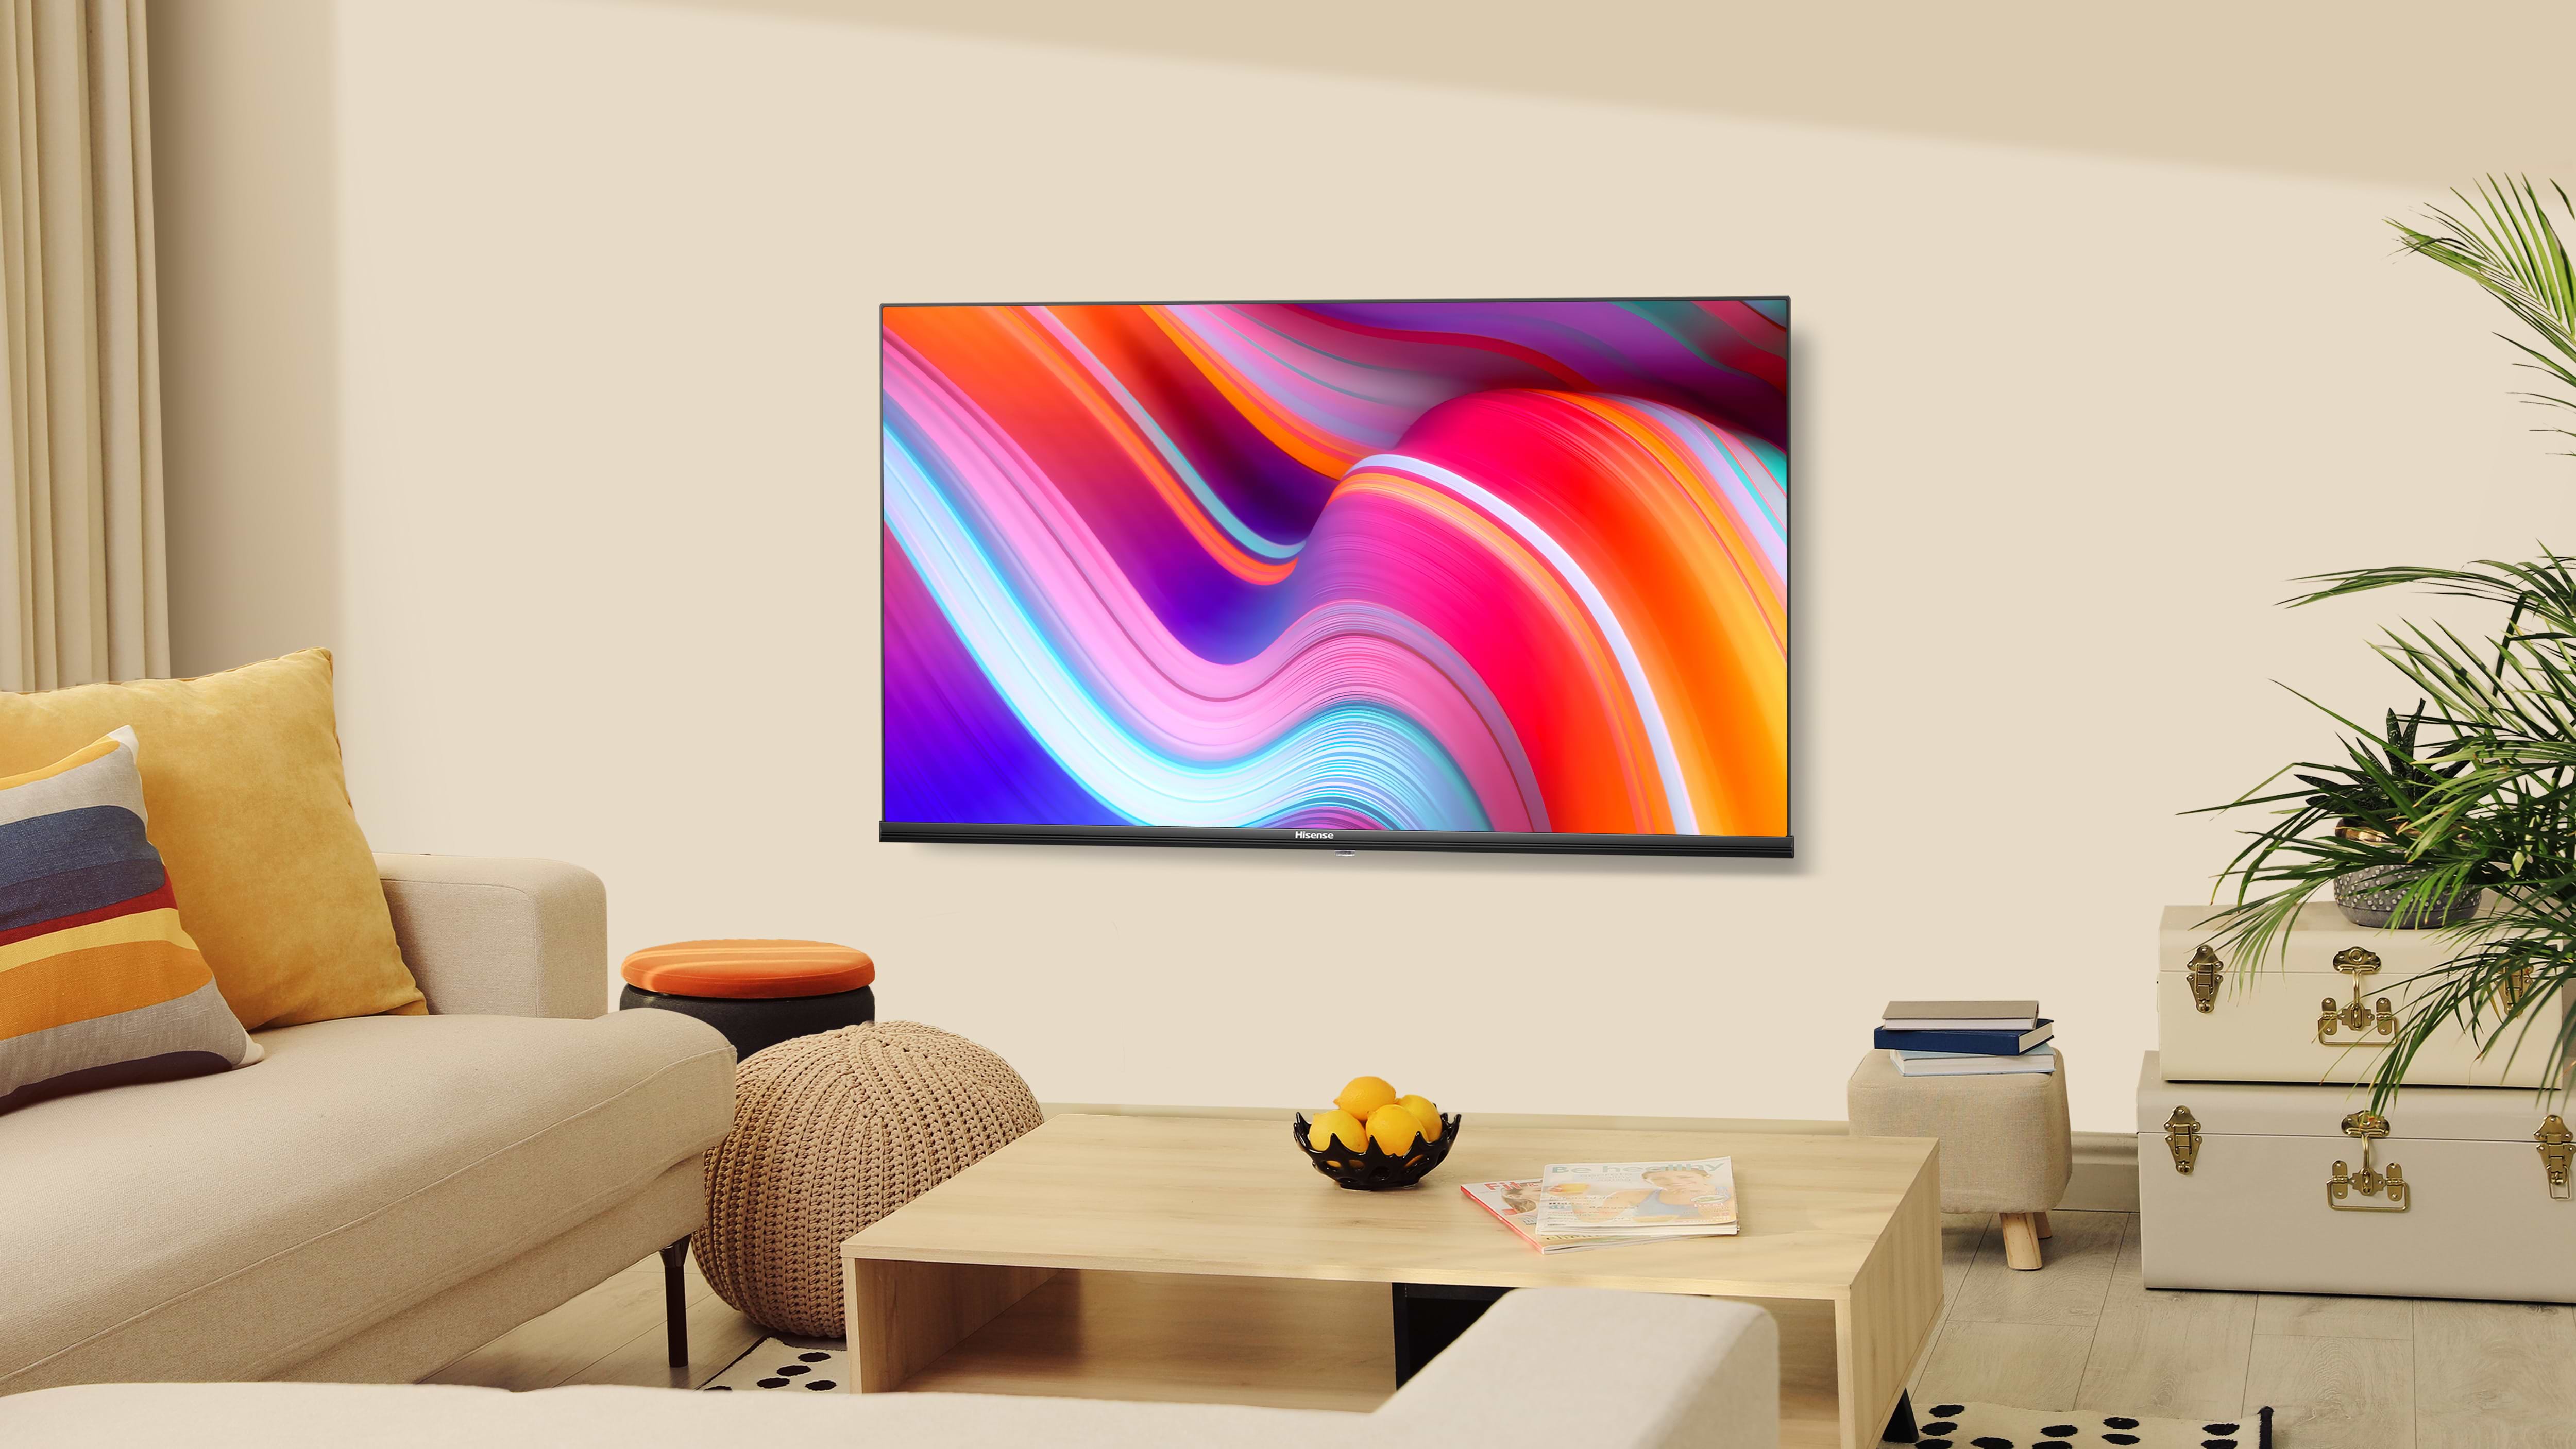 טלוויזיה חכמה 40" Hisense LED HD Smart Vidaa U 6.0 40A4K TV - שלוש שנים אחריות ע"י היבואן הרשמי